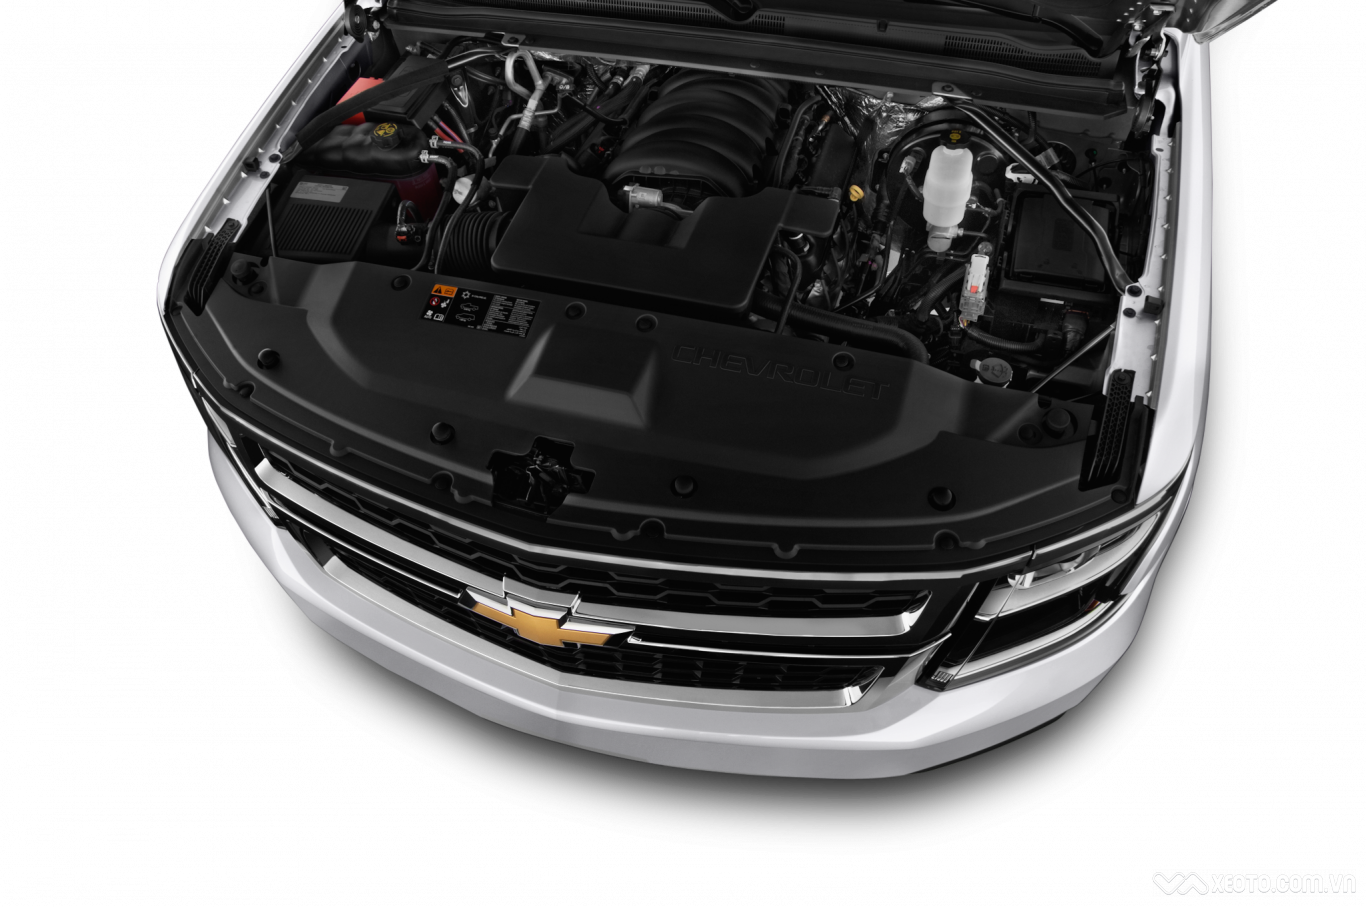 LT и LTZ представляют собой комбинацию букв, используемых Chevrolet для обозначения различных уровней отделки салона внедорожников Tahoe Буквы не являются аббревиатурами Отделка автомобиля, также известная как функции, начинается с базового уровня, включа